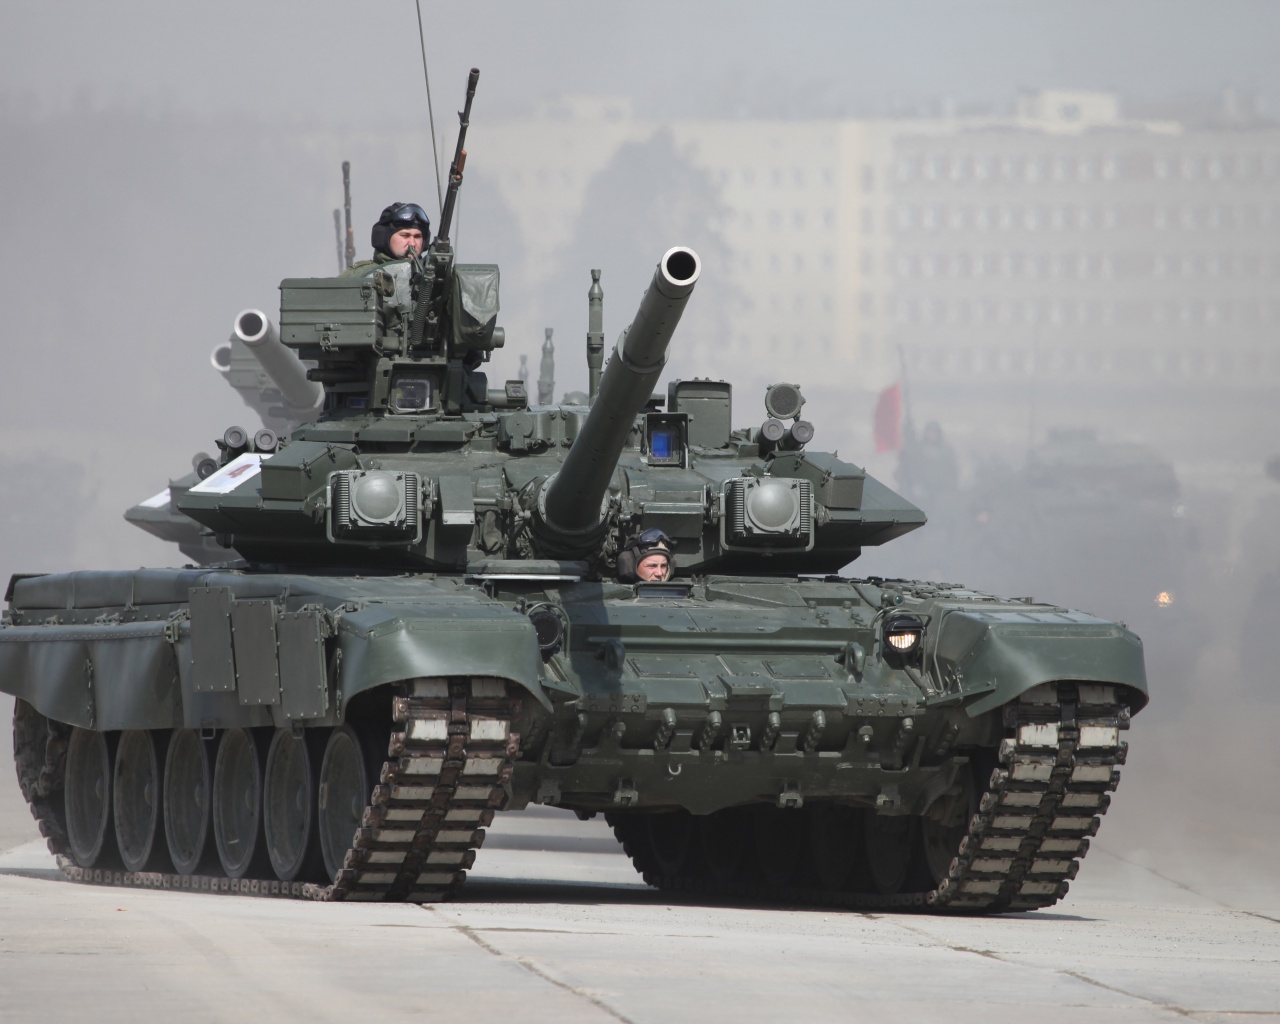 Battle Tank T-90